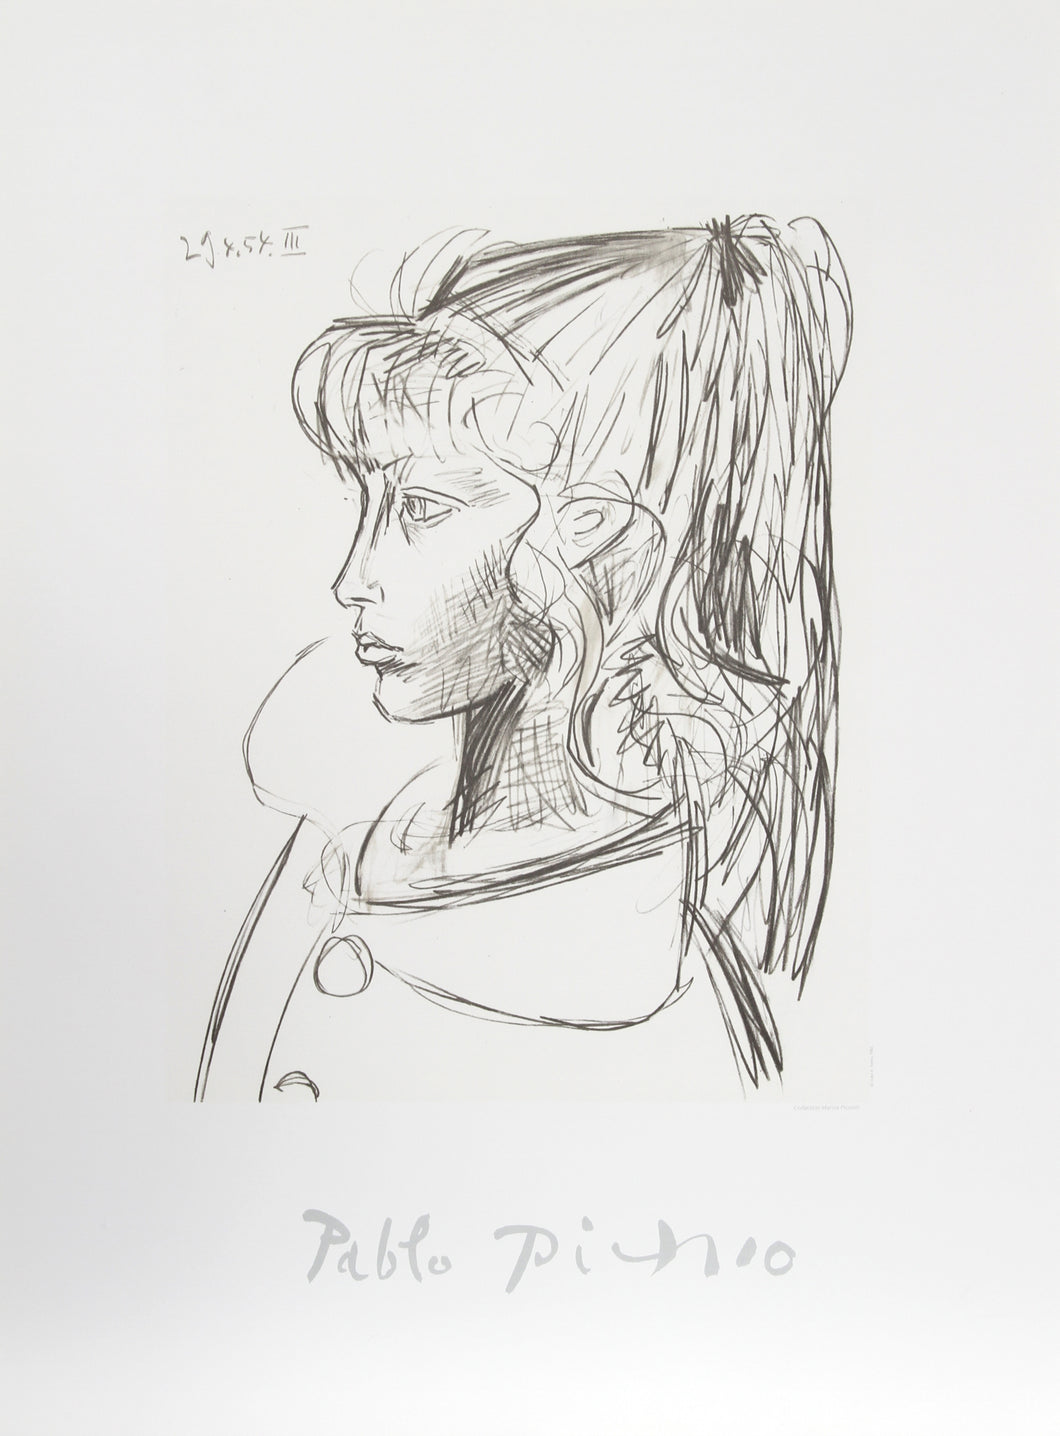 Pablo Picasso, Sylvette de Profil Gouche, 34-1-k, Lithograph